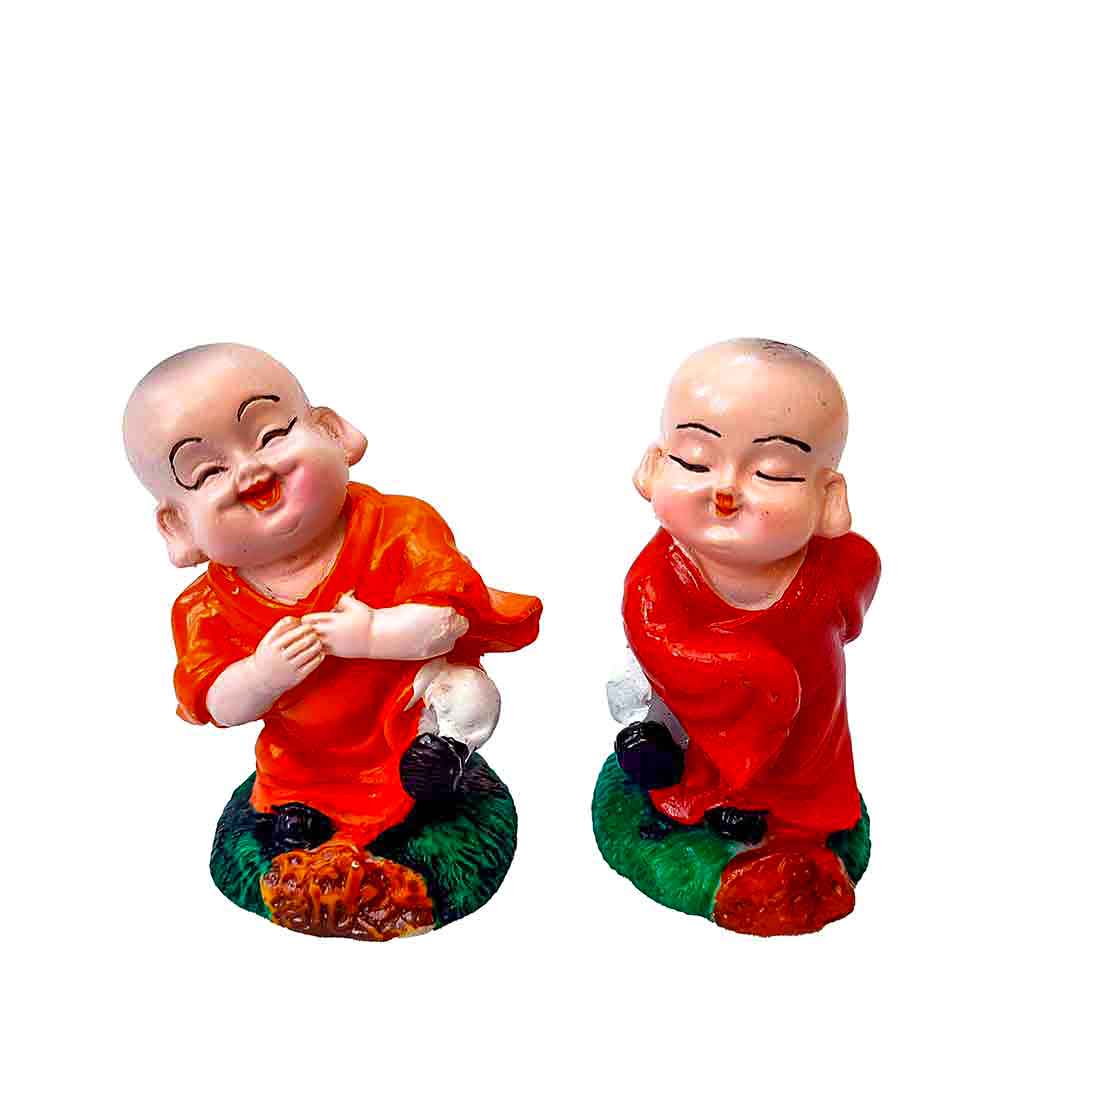 Baby Monk Showpiece - for Home  & Garden Decor -5 Inch - Set of  2 - ApkaMart